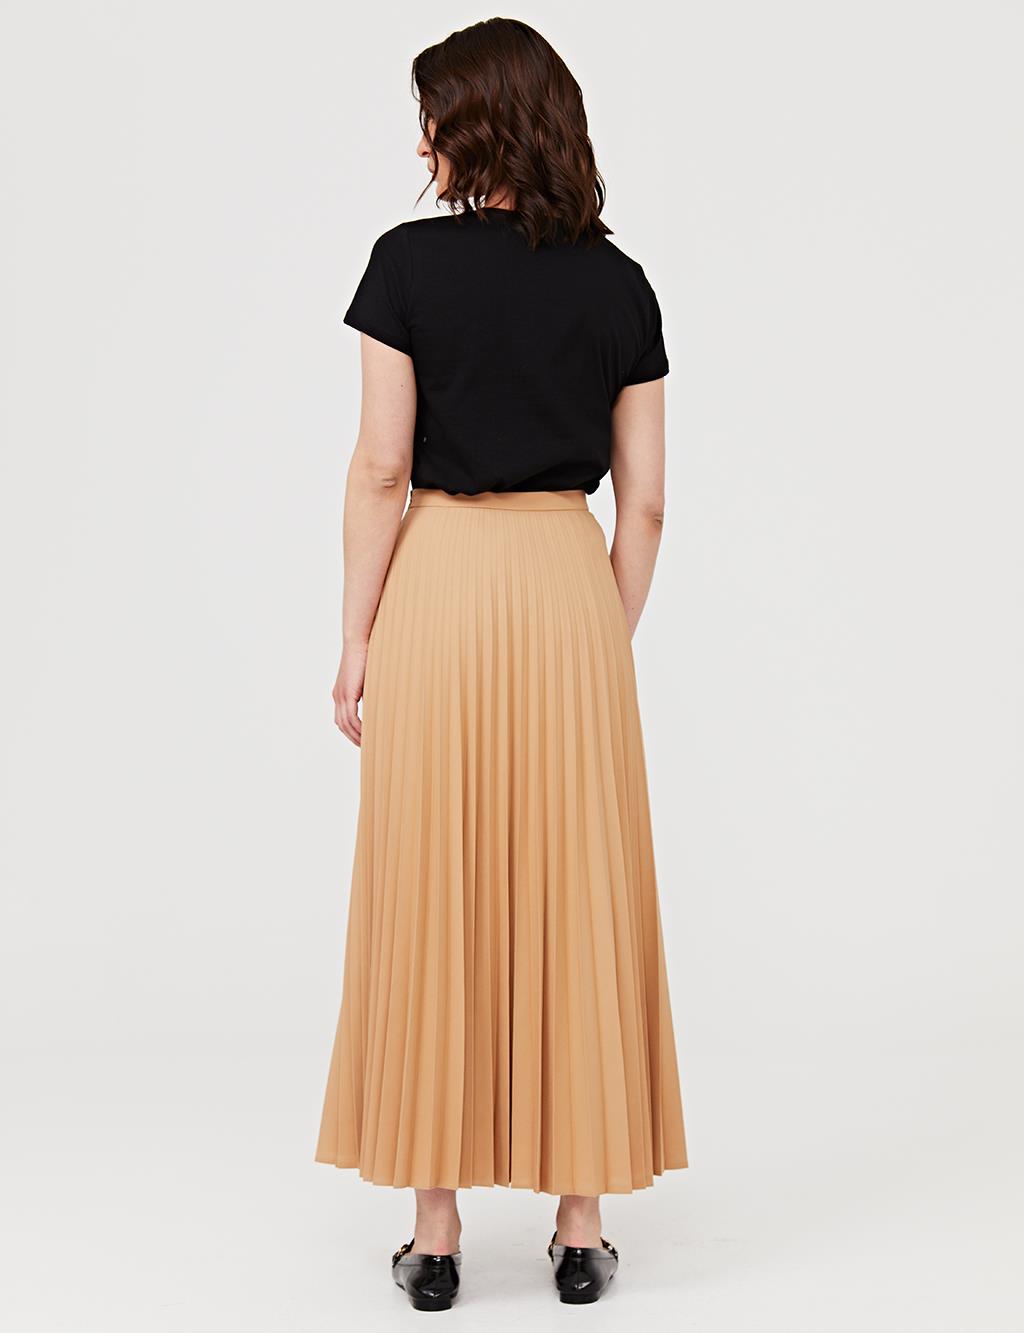 Basic Pleated Skirt SZ 12501 Camel